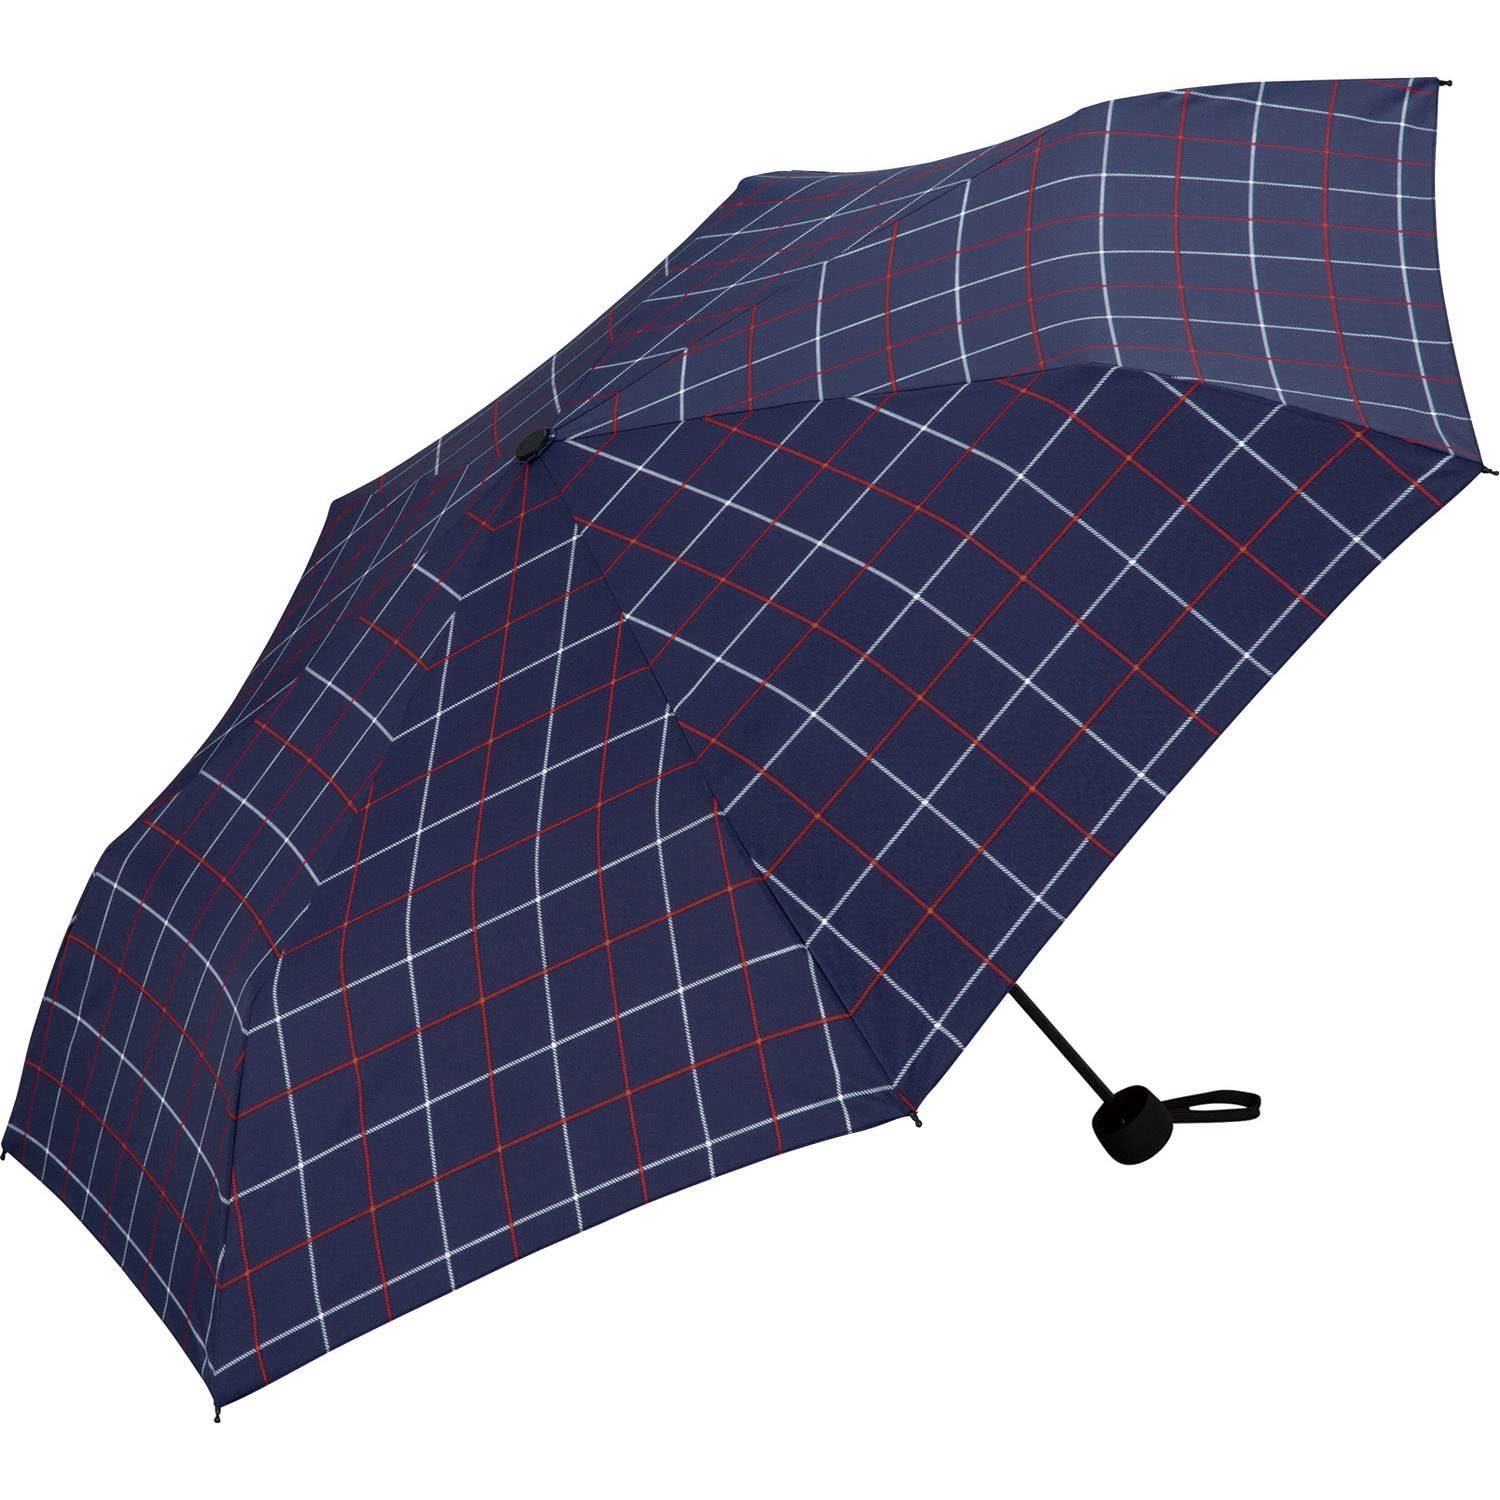 Wpc. 雨傘 UNISEX BASIC FOLDING ウィンドウペン 折りたたみ傘 7K レディース メンズ 晴雨兼用 大きい ベーシック シンプル 大きめグリッ